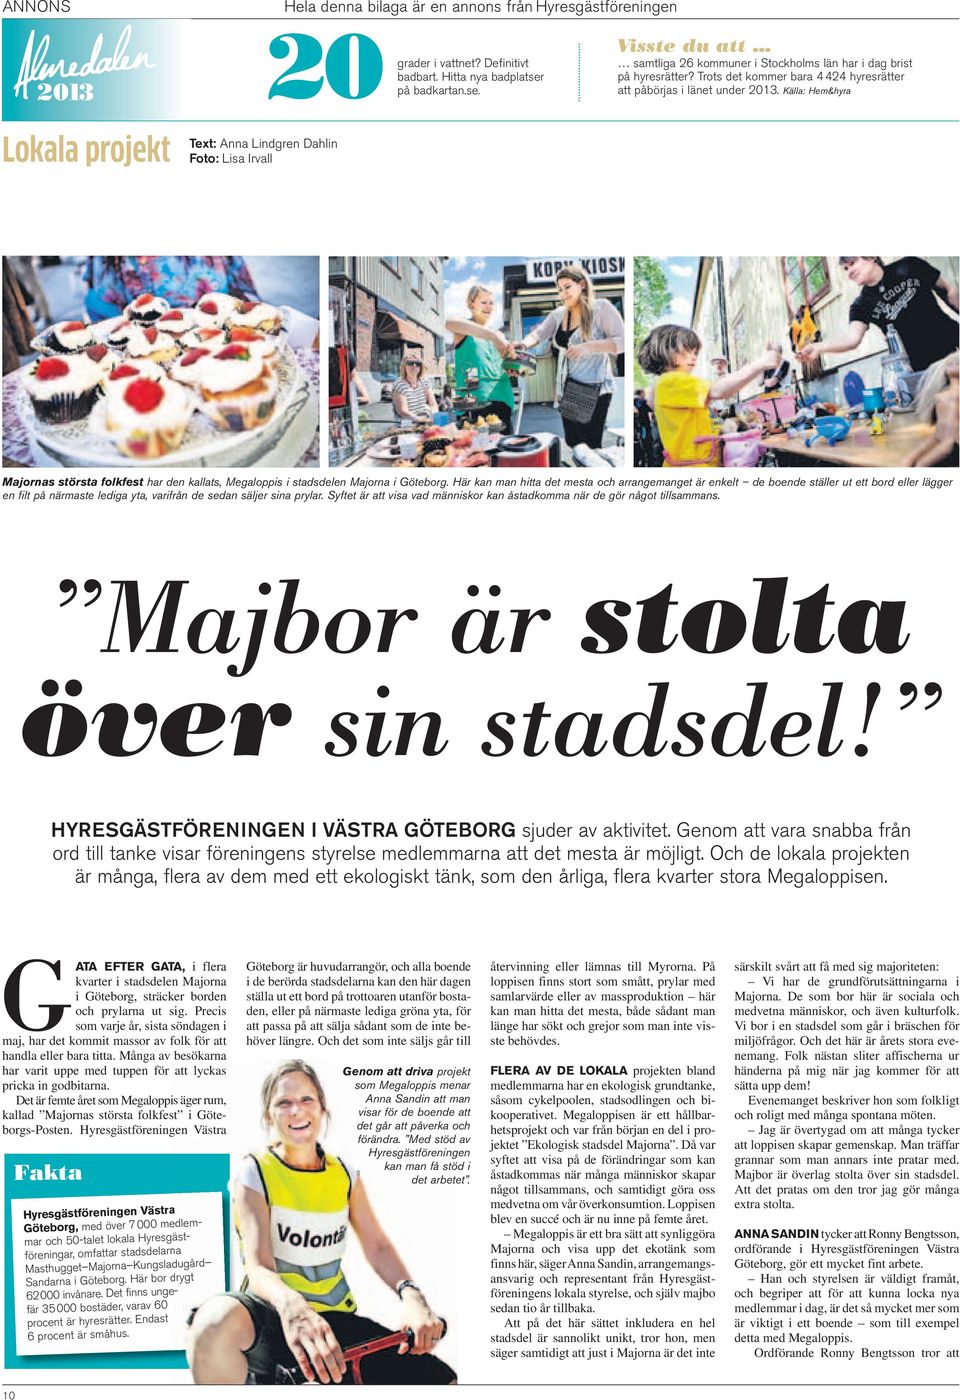 Källa: Hem&hyra Majornas största folkfest har den kallats, Megaloppis i stadsdelen Majorna i Göteborg.